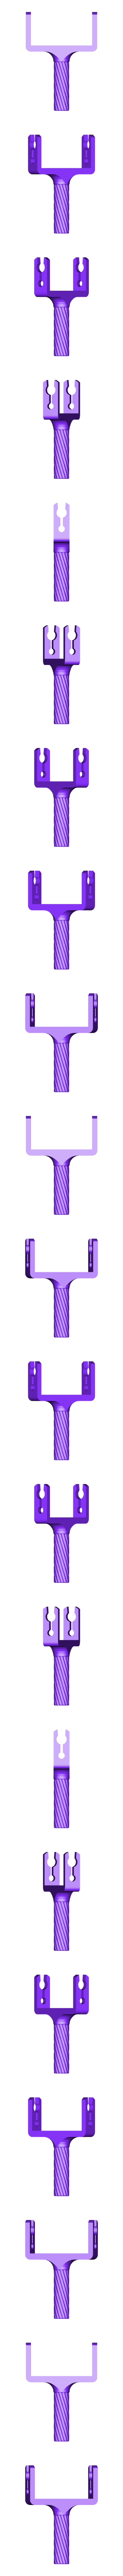 Raczka_2.stl Download free STL file Massage tool (+v2) • 3D print object, kpawel